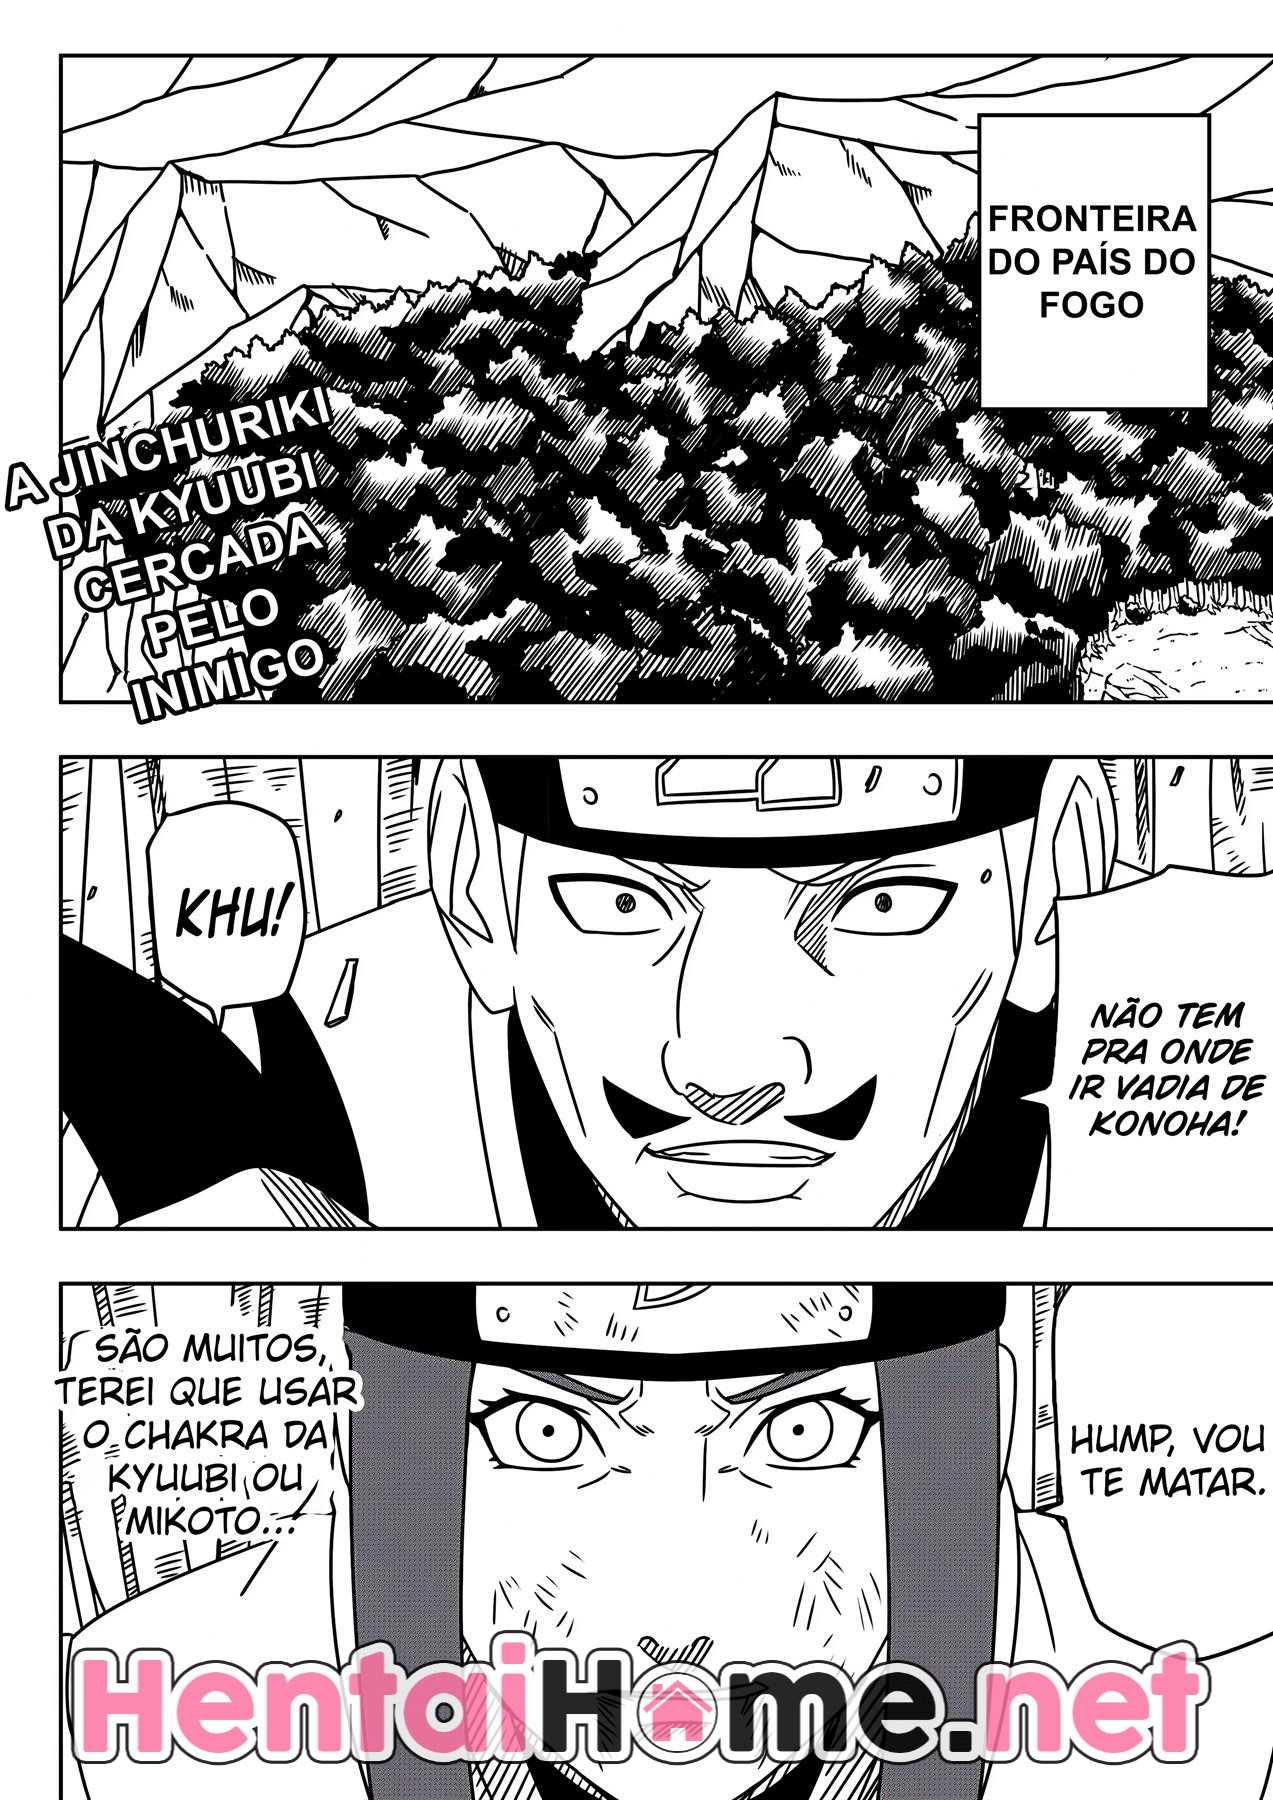 Naruto fodendo em Konoha - Foto 2